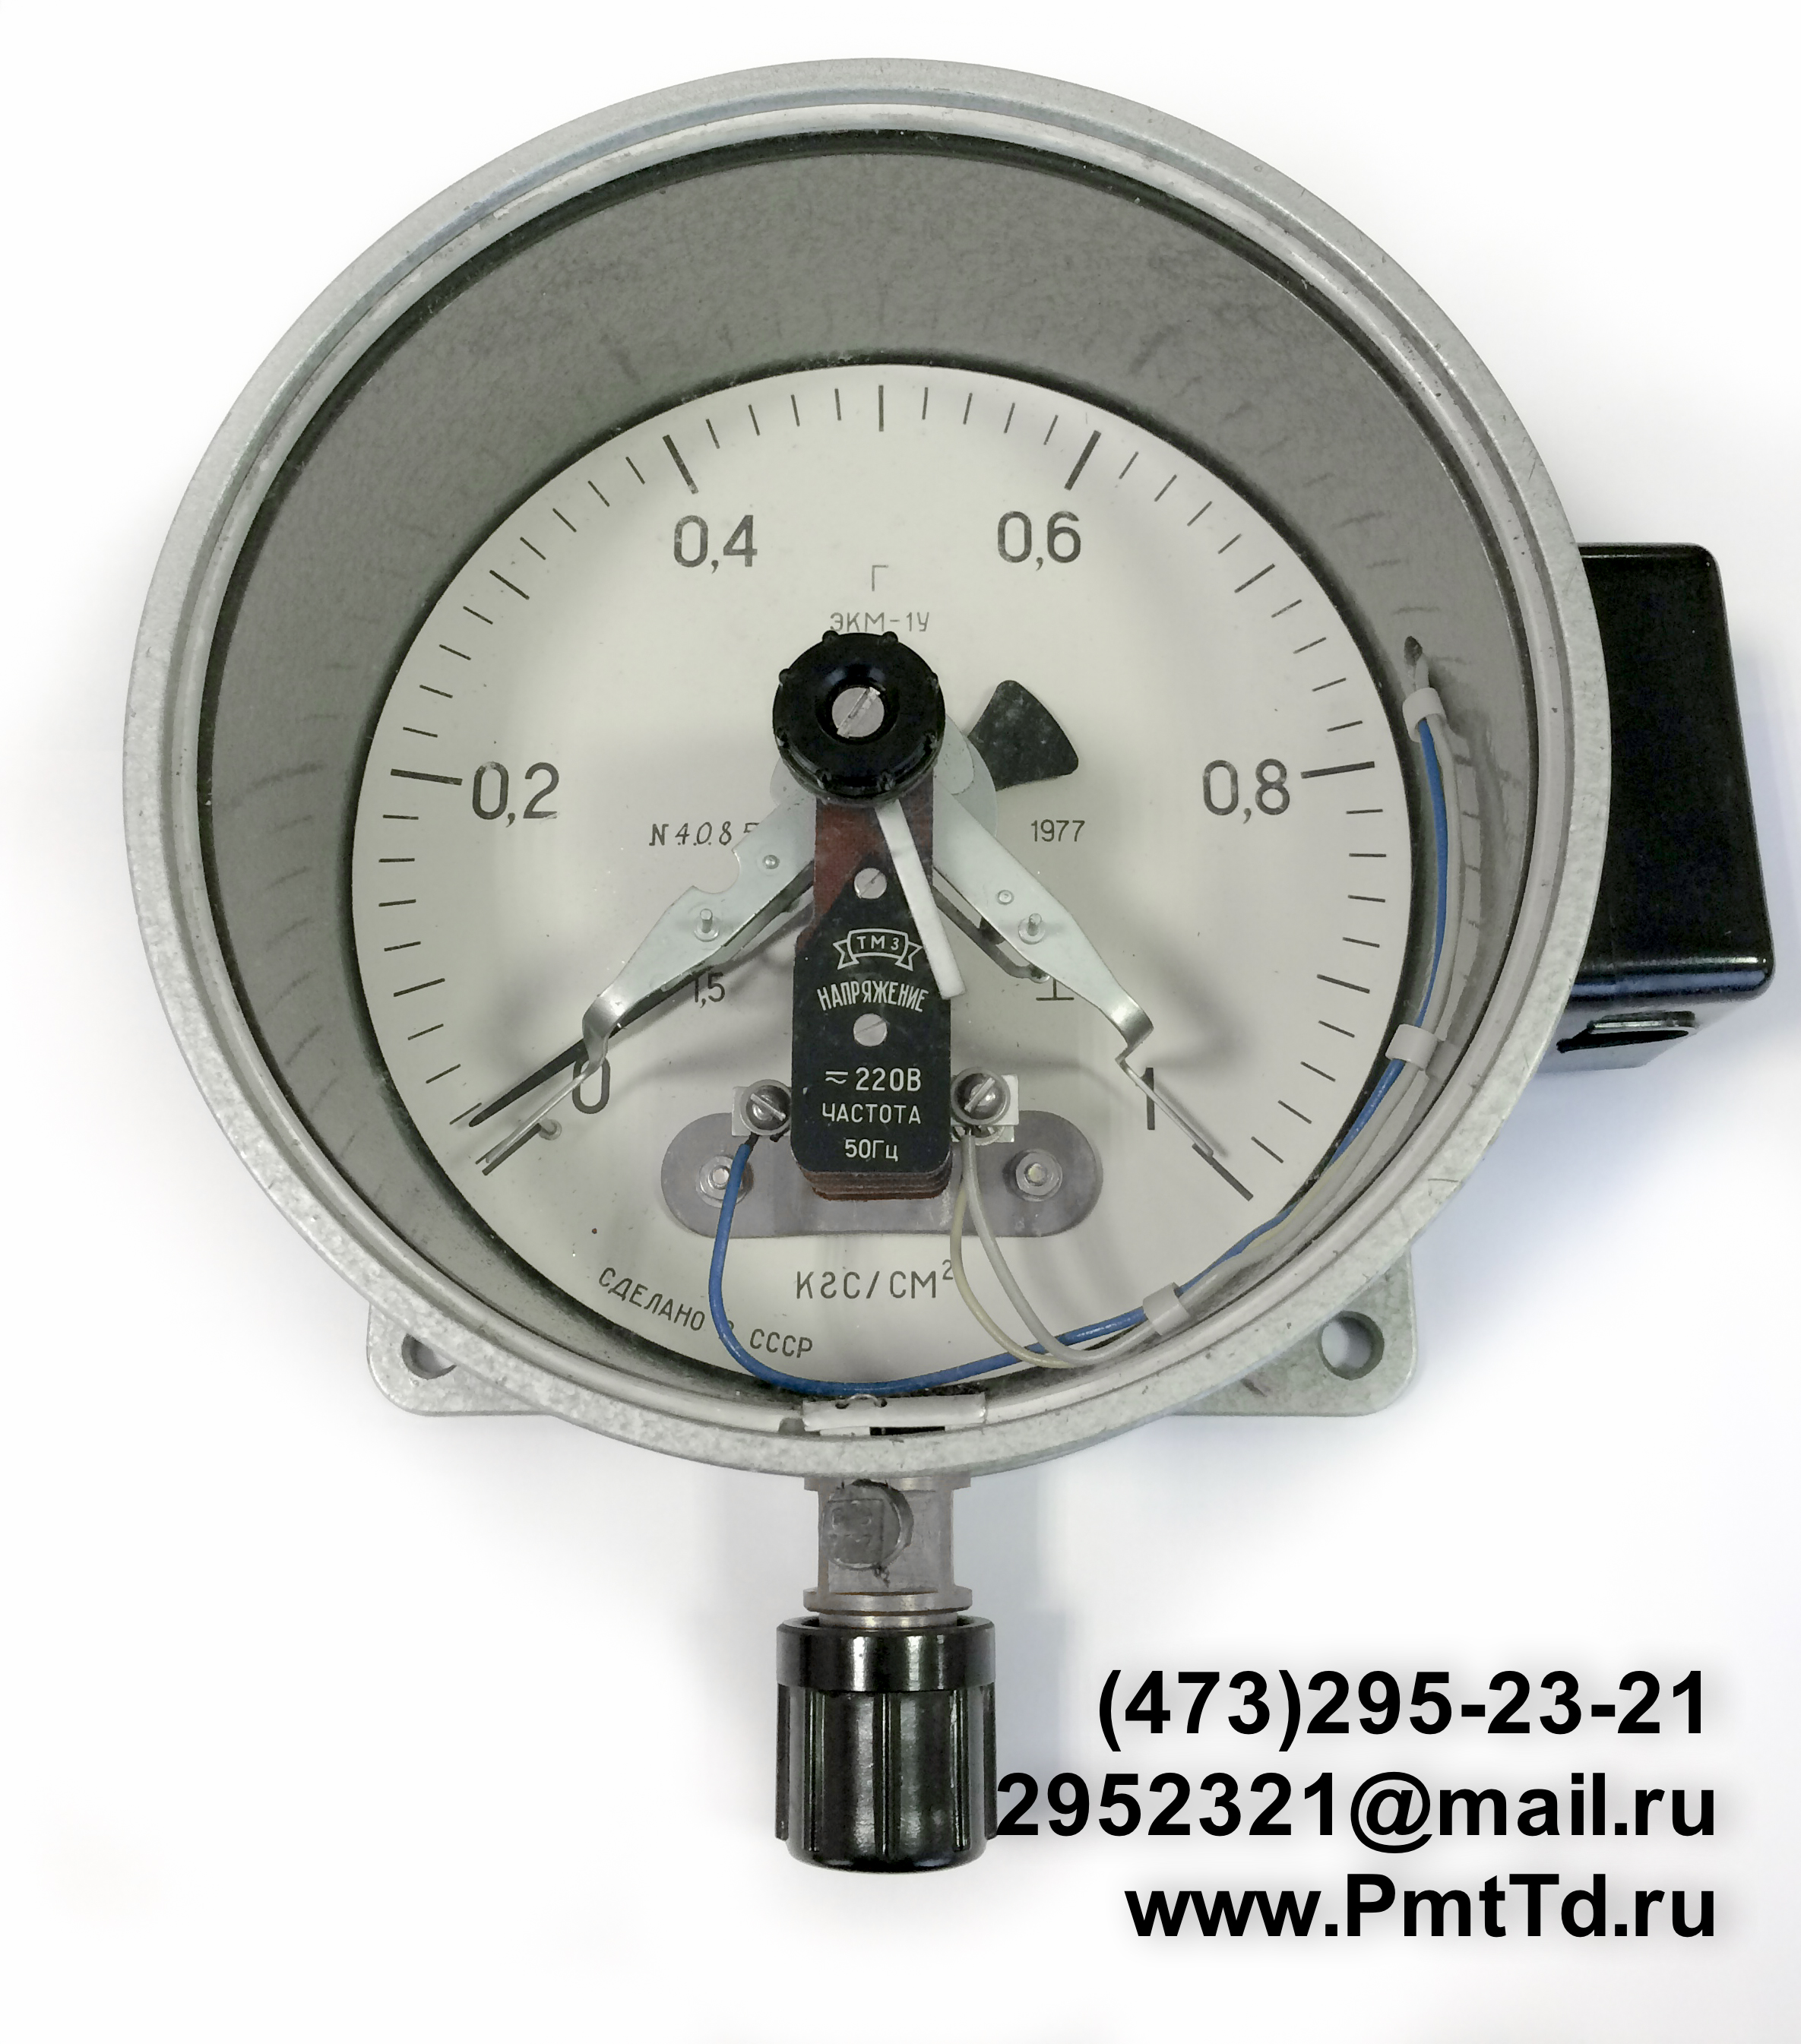 Электроконтактный манометр ЭКМ-1У 0-60 кгс/см2